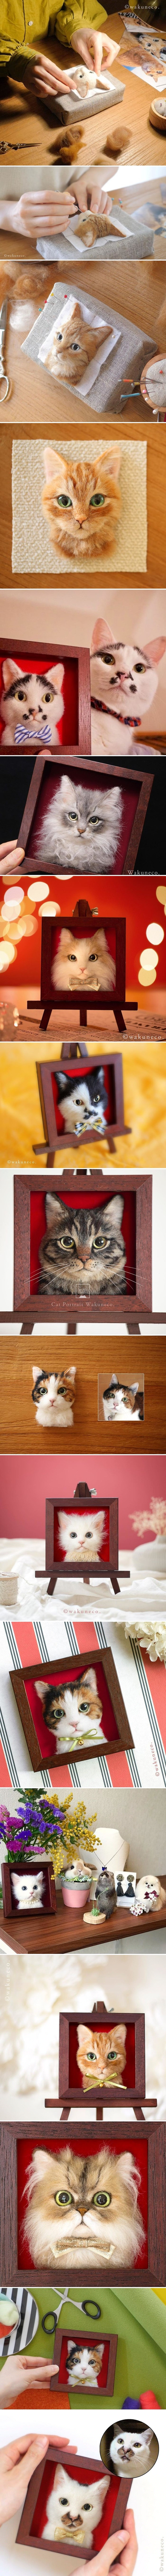 Umjetnica koristi vunu i igle kako bi pomoću posebne tehnike napravila realistične portrete mačaka